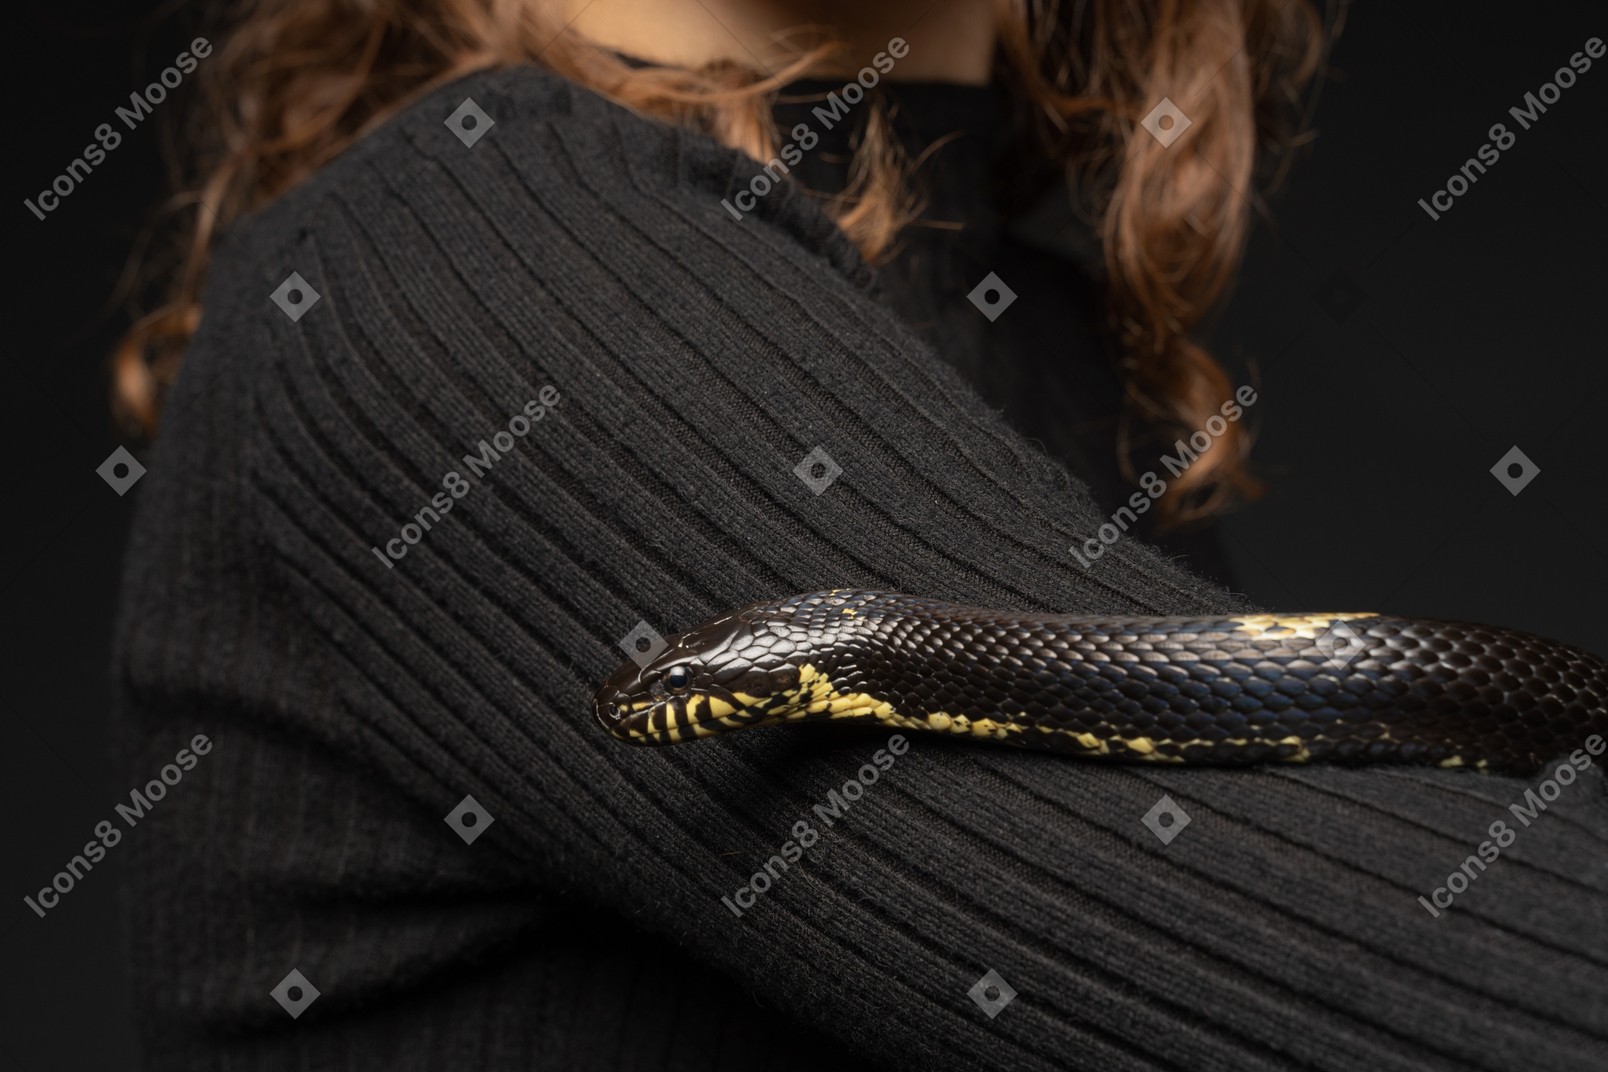 Serpiente de rayas negras que se curva alrededor del cuello de la mujer joven